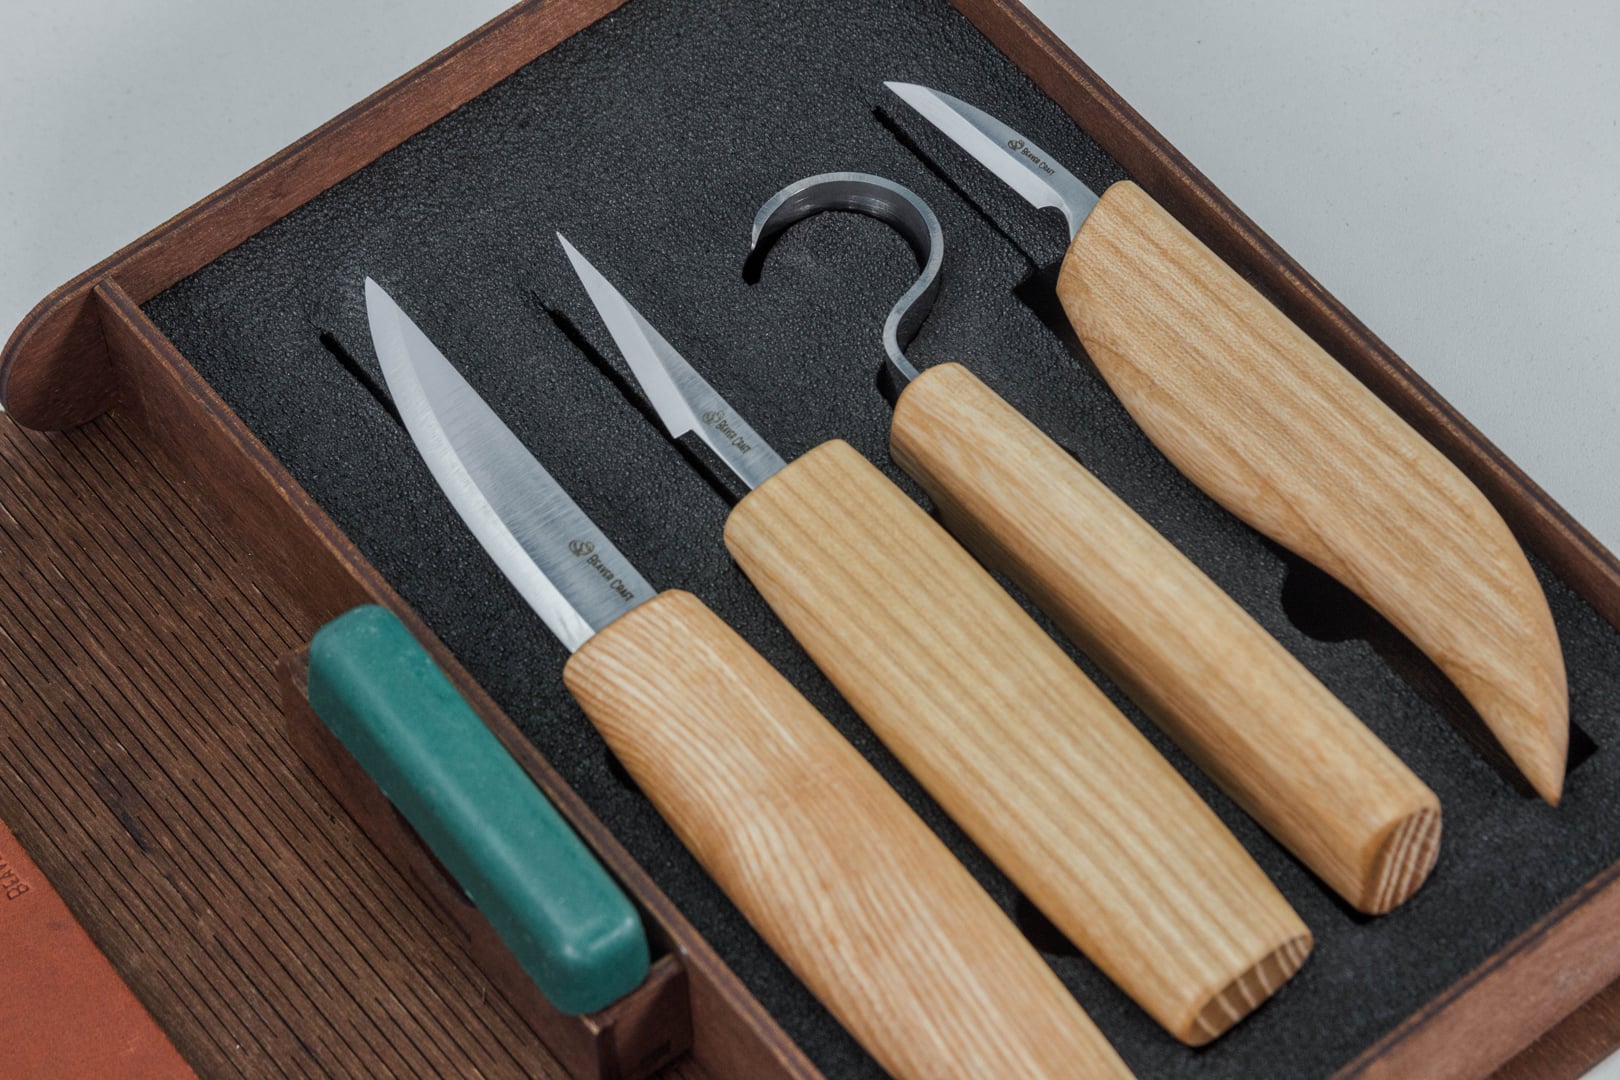 Wood Carving Tools Set Knife Set for Beginner Knives Whittling Knife  BeaverCraft